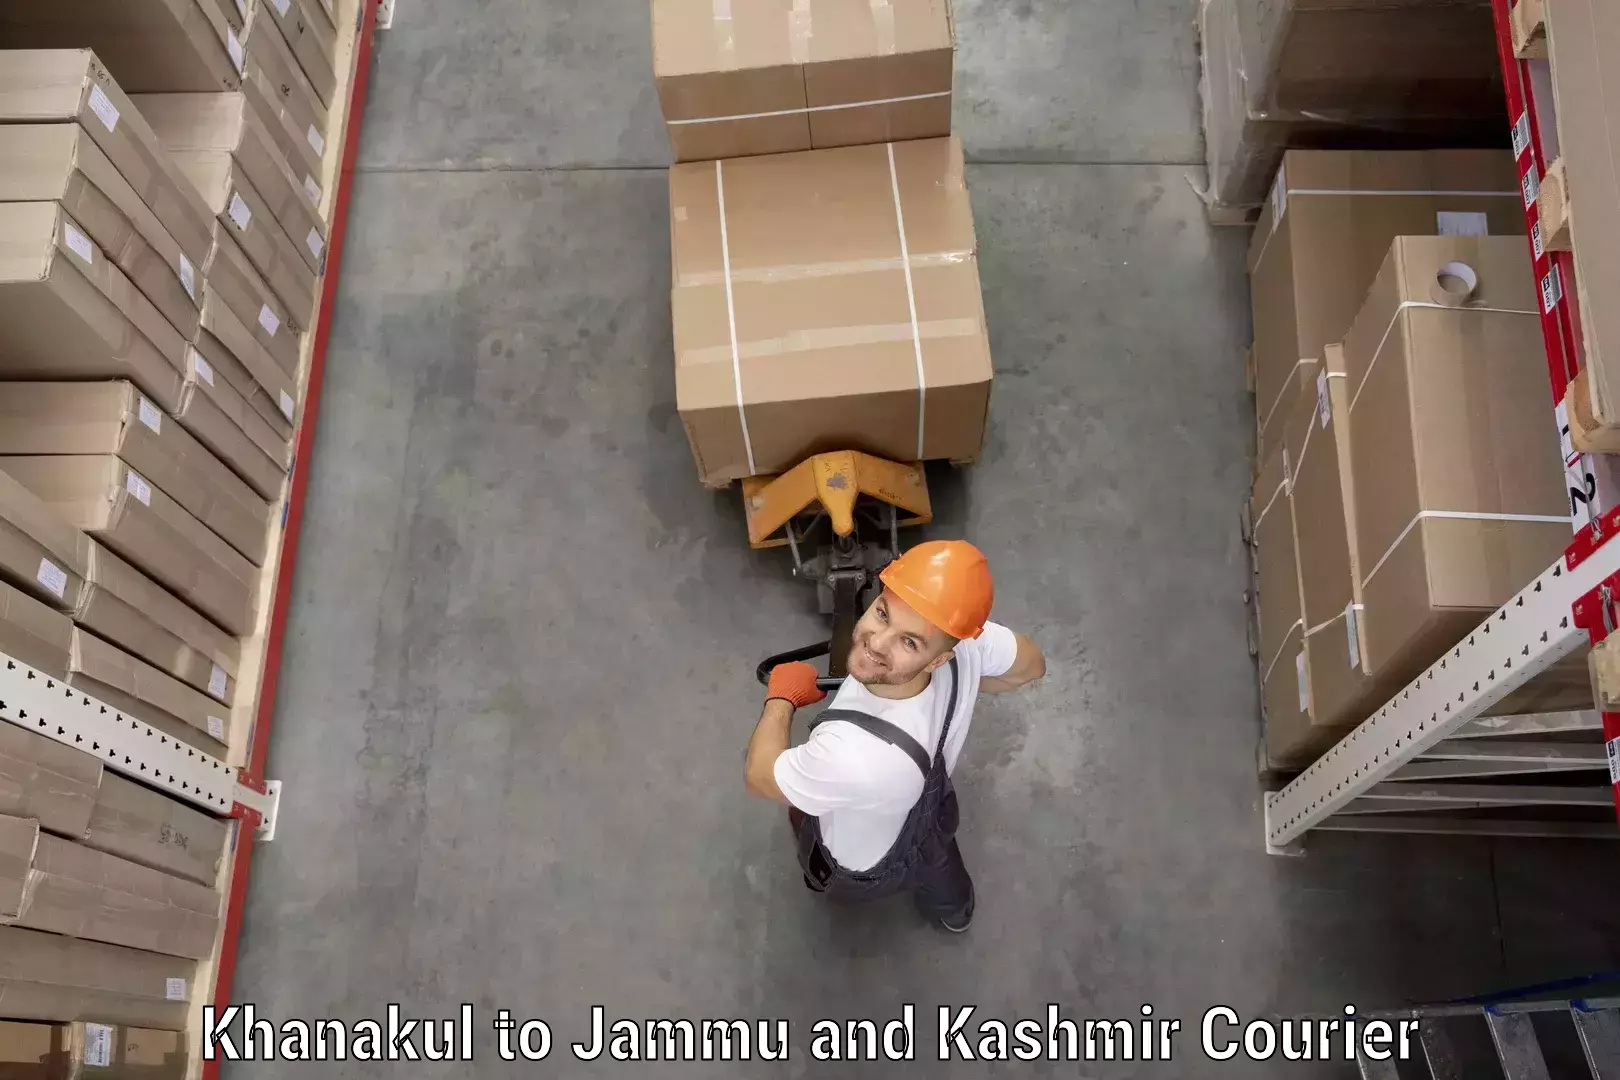 24/7 courier service Khanakul to Jammu